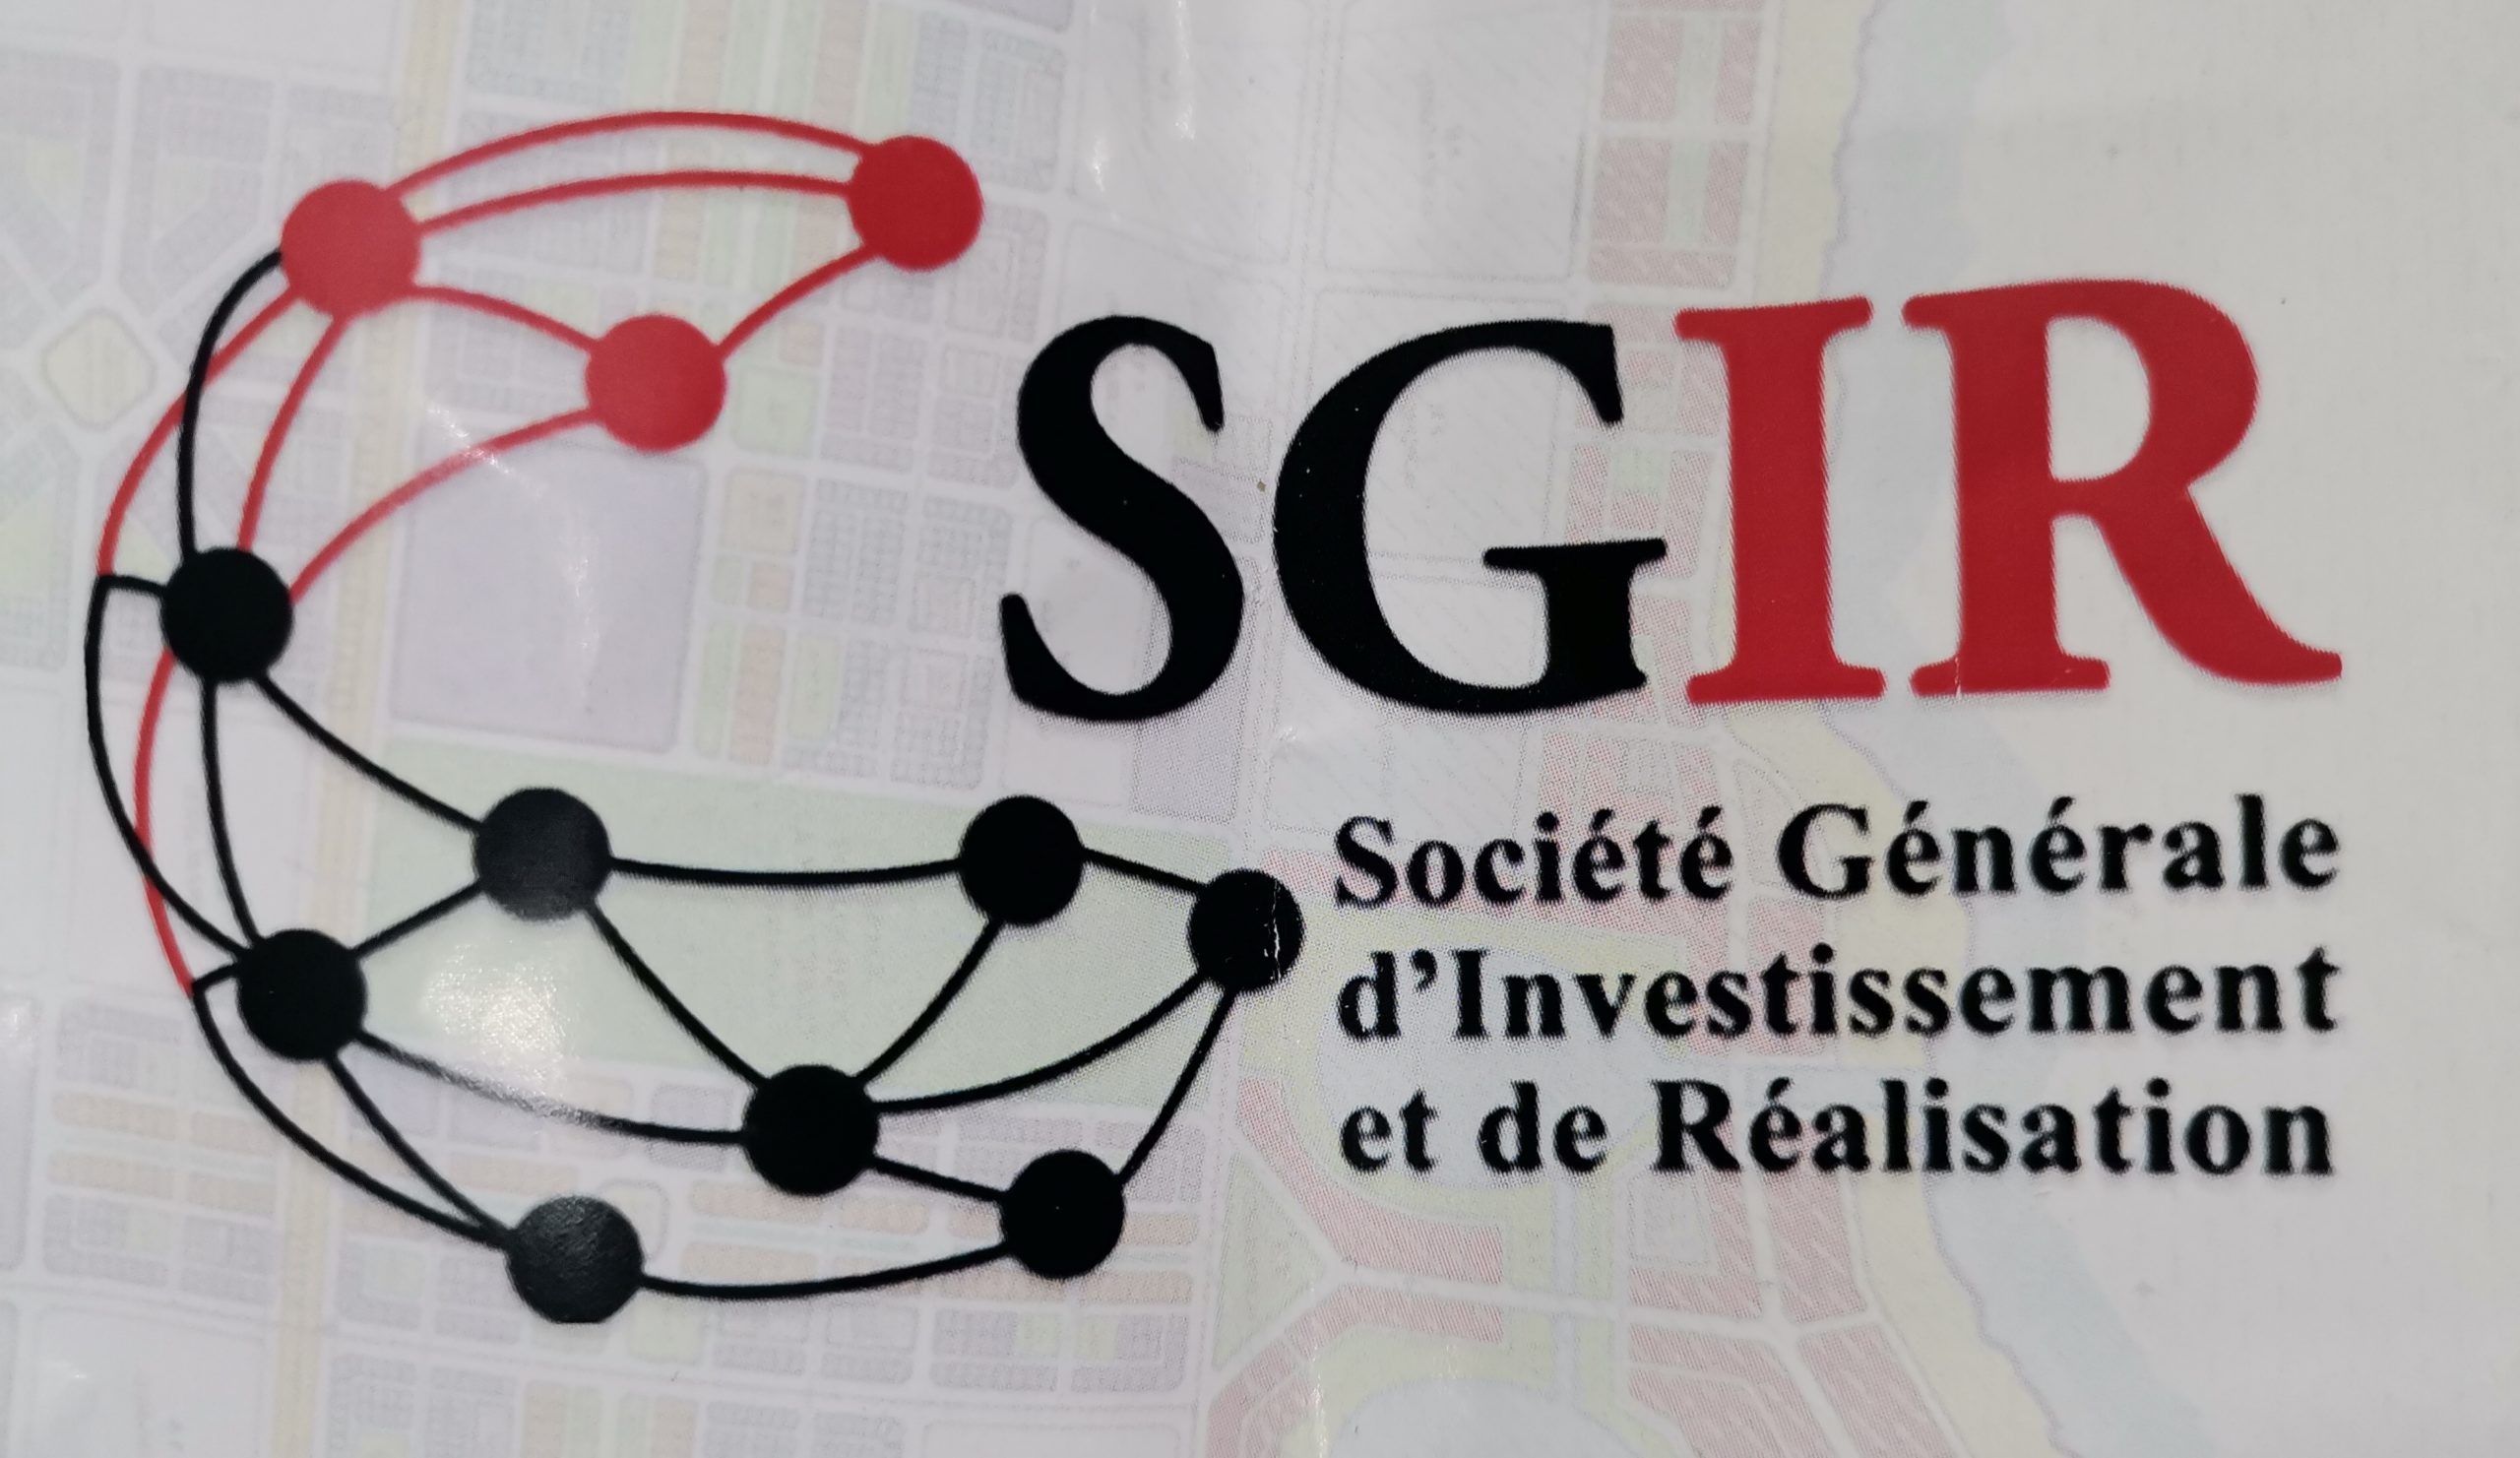 À la Découverte de la Société Générale d’Investissement et de Réalisation (SGIR) réalisatrice de la ville économique et durable d’Adoukro sous préfecture de Jacqueville.